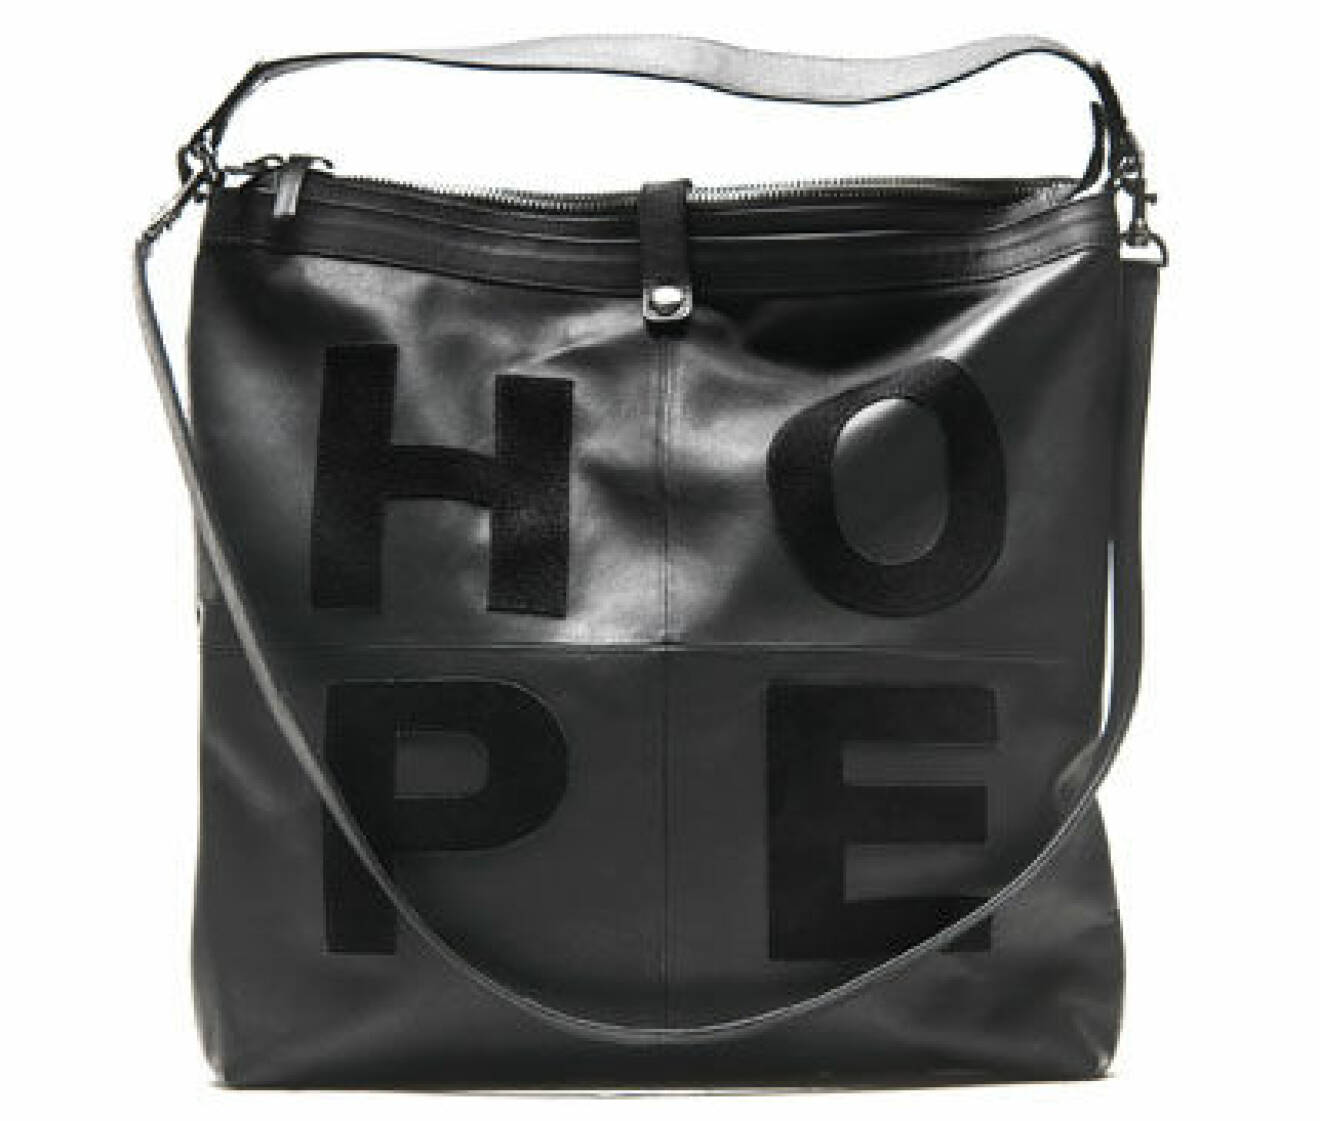 13. Väska, 2 600 kr, Hope